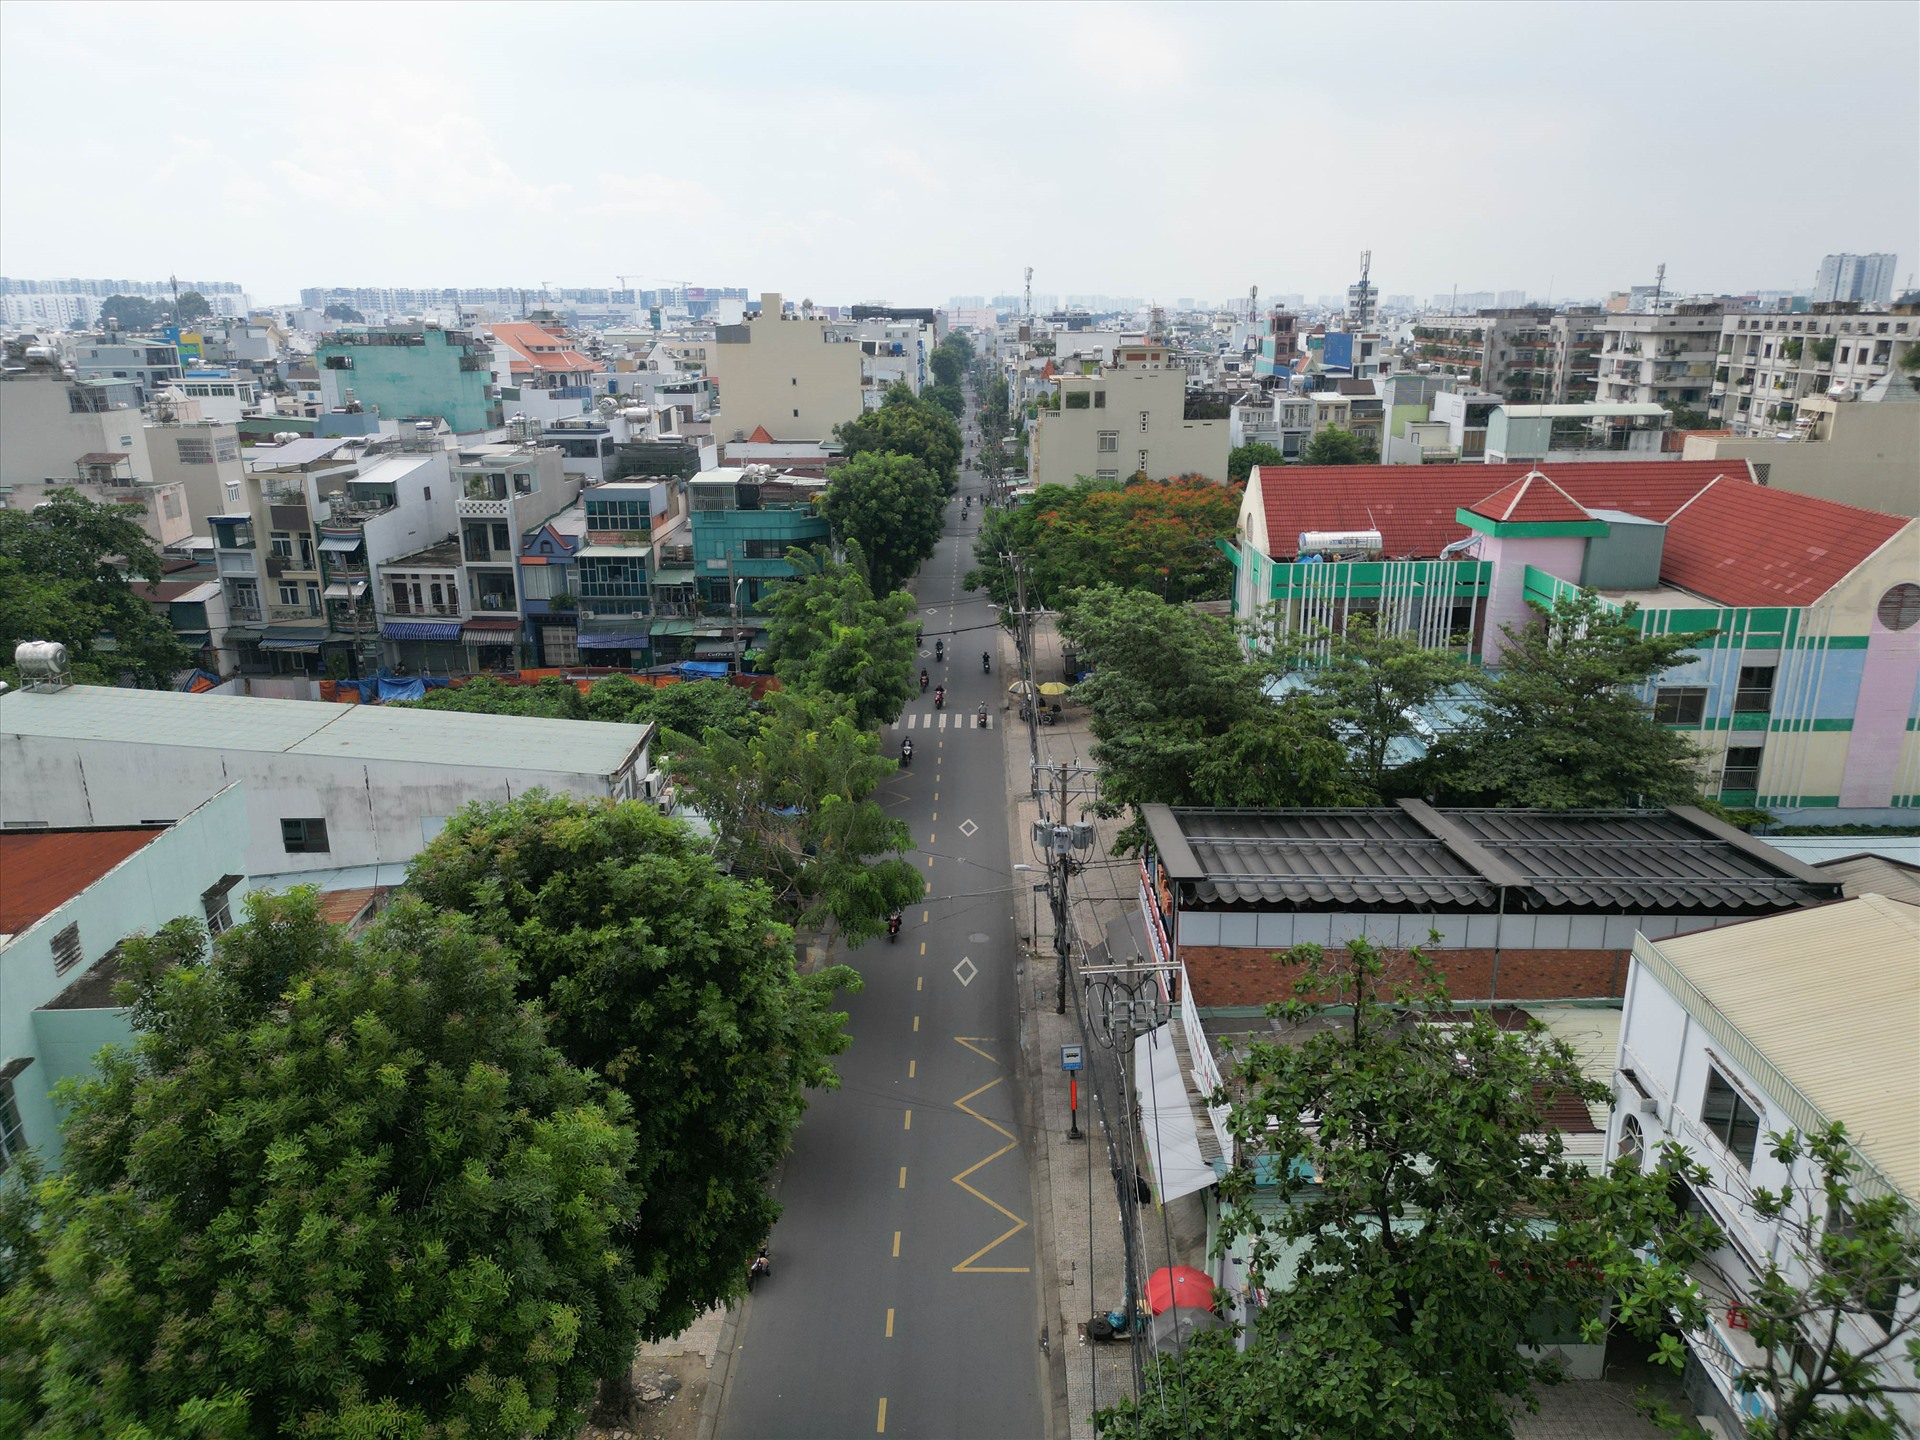 5 tuyến đường này là Tân Quý (quận Tân Phú), Trương Công Định, Ba Vân, Bàu Cát (quận Tân Bình), Nguyễn Hữu Cảnh (quận Bình Thạnh).